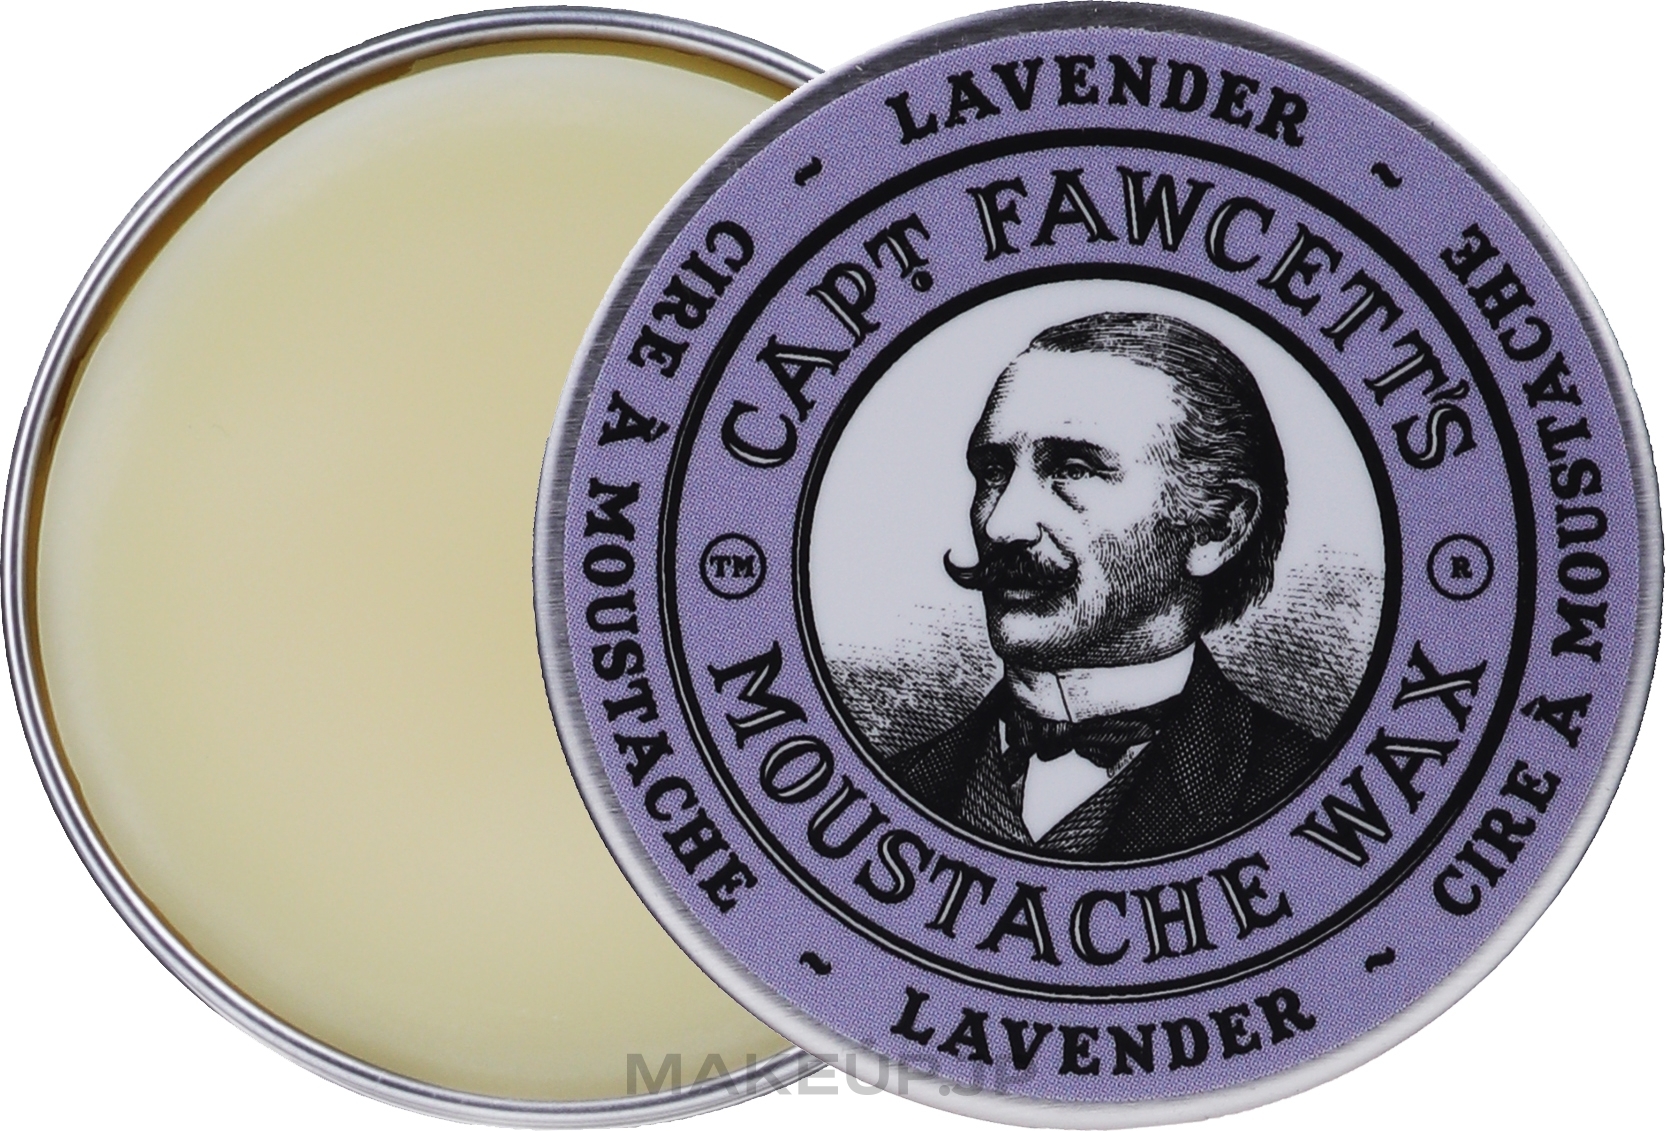 Moustache Wax - Captain Fawcett Lavender Moustache Wax — photo 15 ml